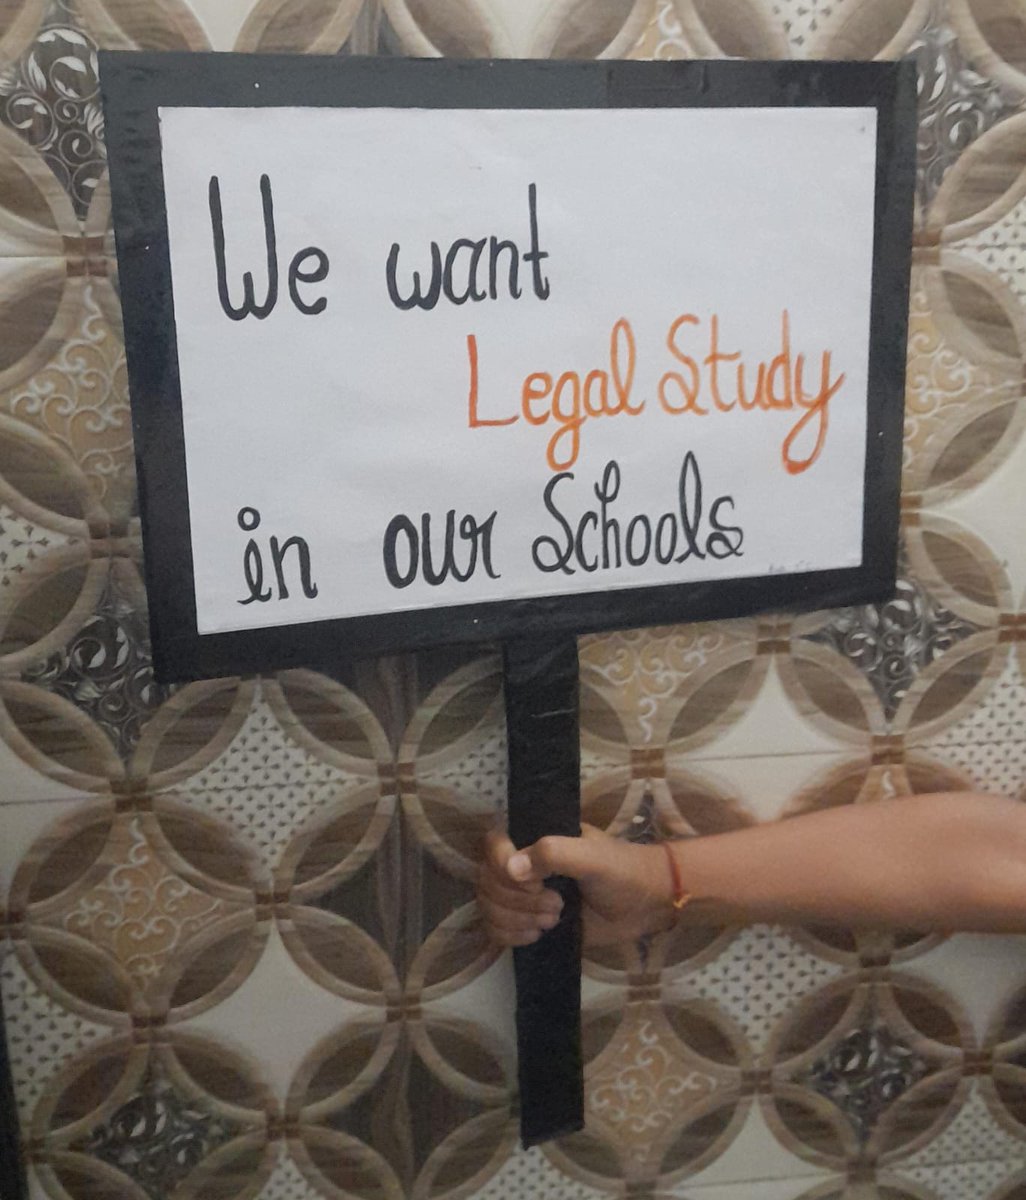 #Pay_attention भारत के 15 लाख स्कूलों में Legal Studies subject नही पढ़ाया जा रहा #Loud_and_Clear दिल्ली के उत्तर पूर्वी जिला से उठी आवाज We want Legal Studies in our schools It build career it prevent Crime @DeepikaBhardwaj @Dir_Education @PMOIndia @MsnLegalStudies